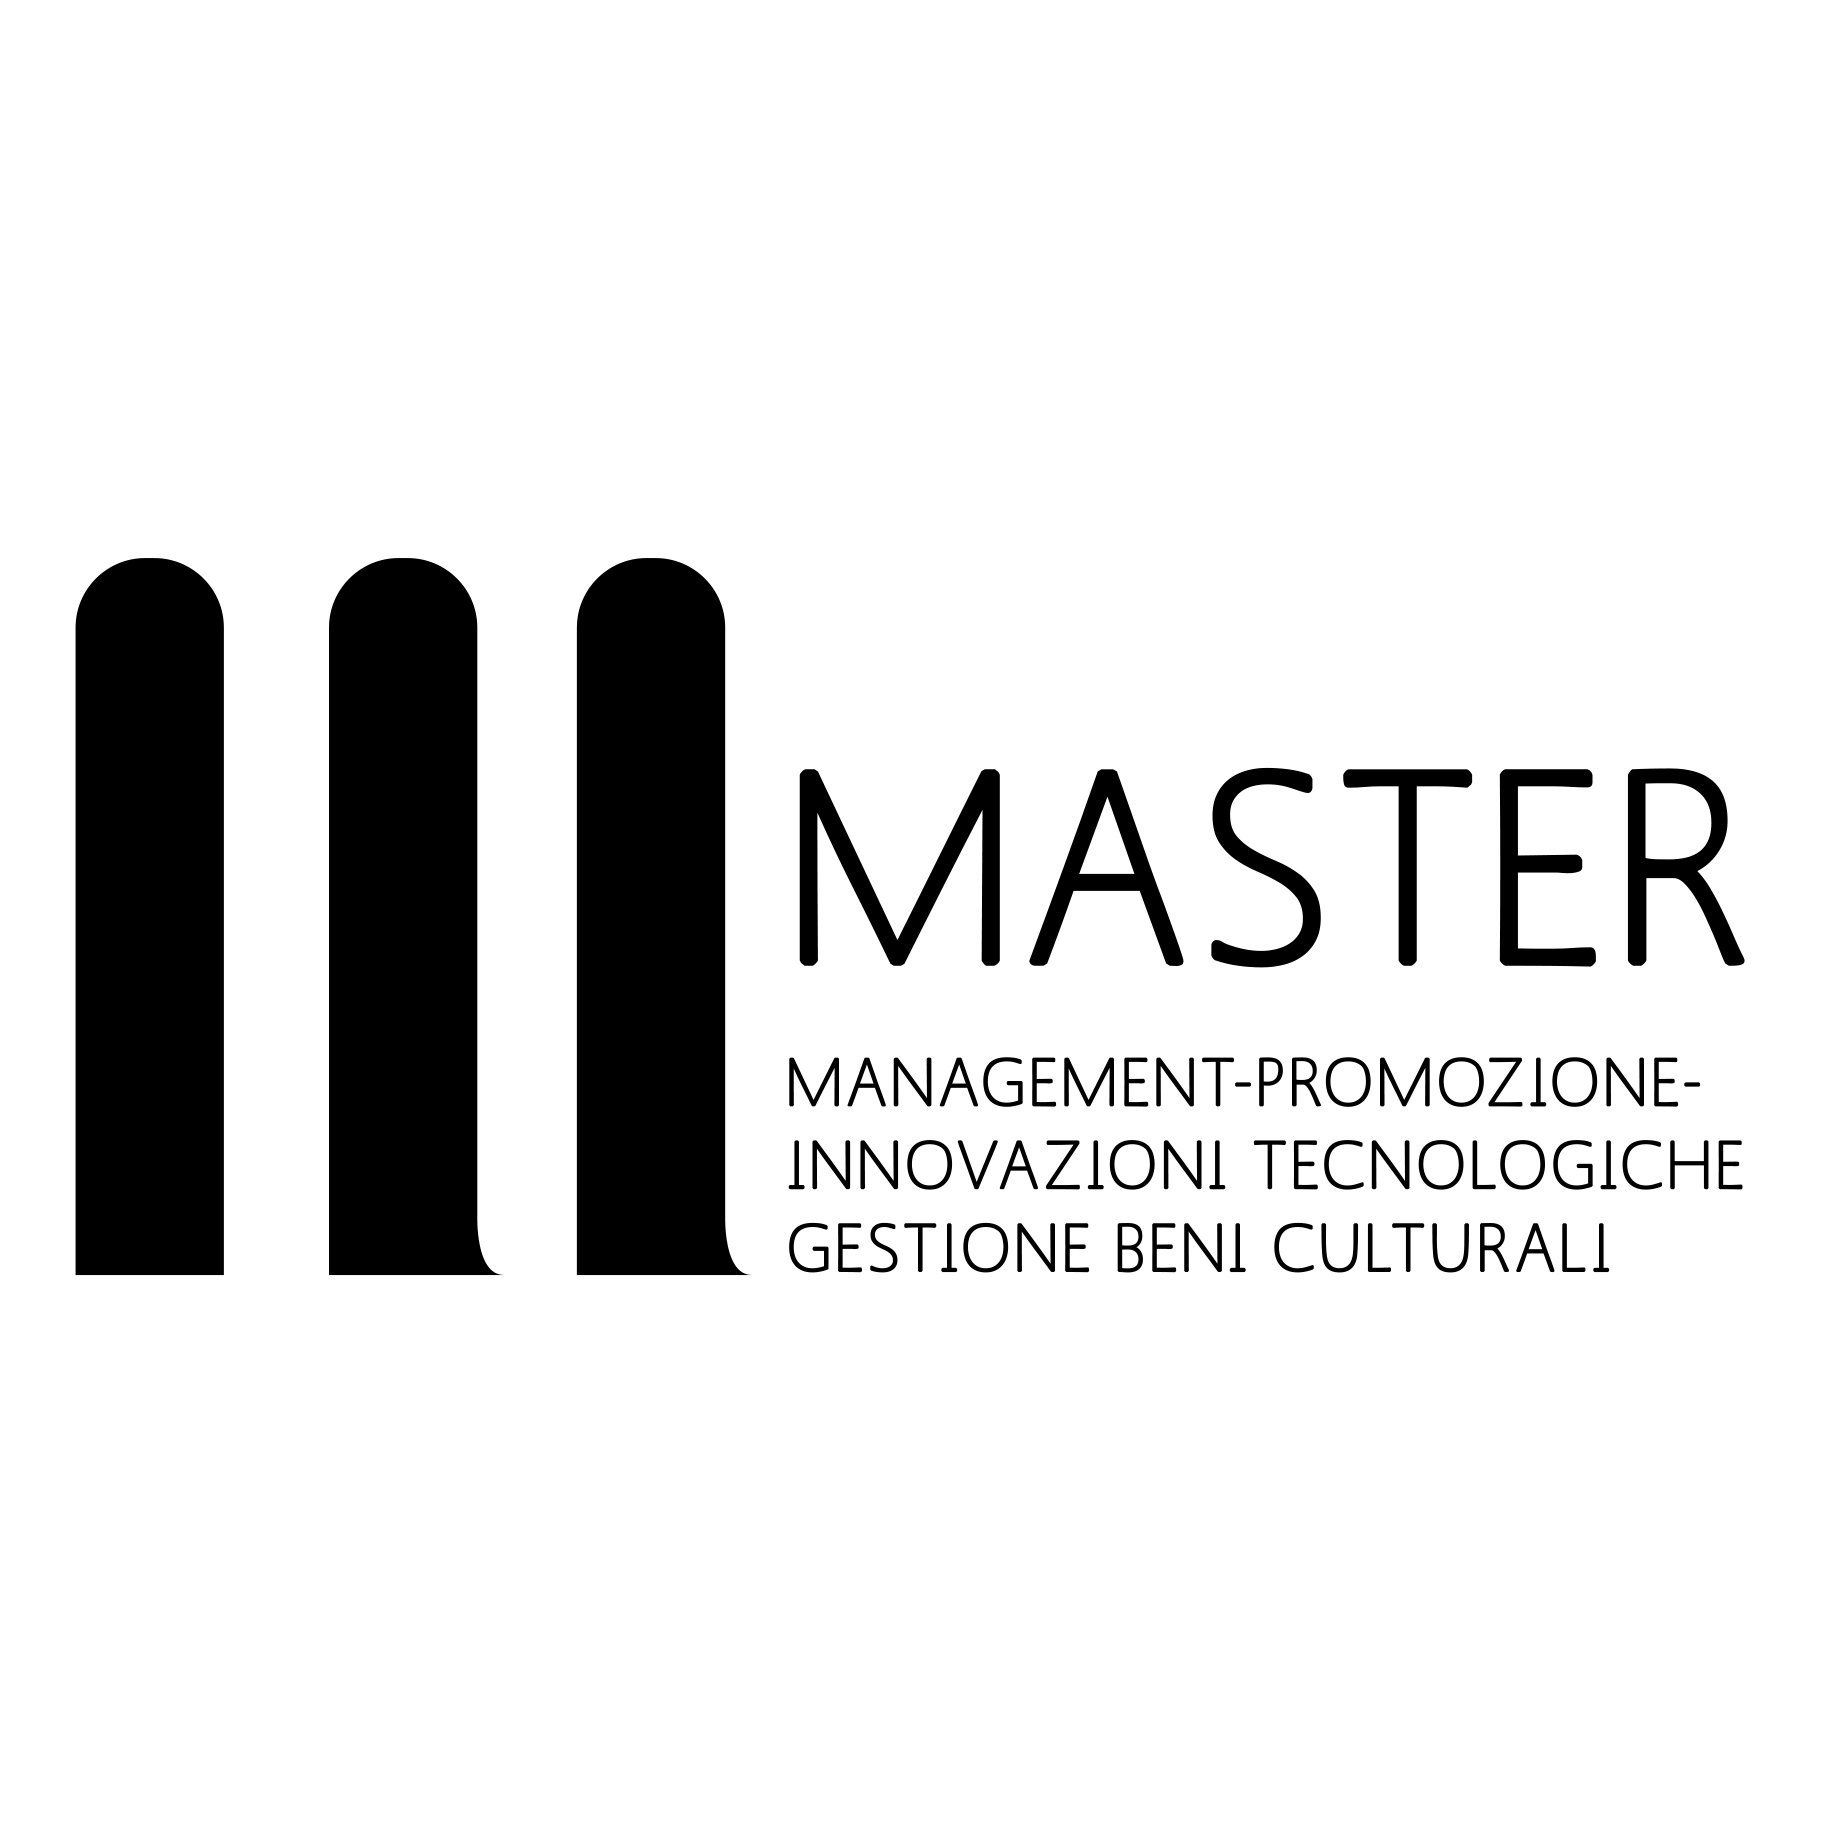 Master in Management, Promozione, Innovazioni Tecnologiche nella Gestione dei Beni Culturali (Università Roma 3) #beniculturali #ARTjob